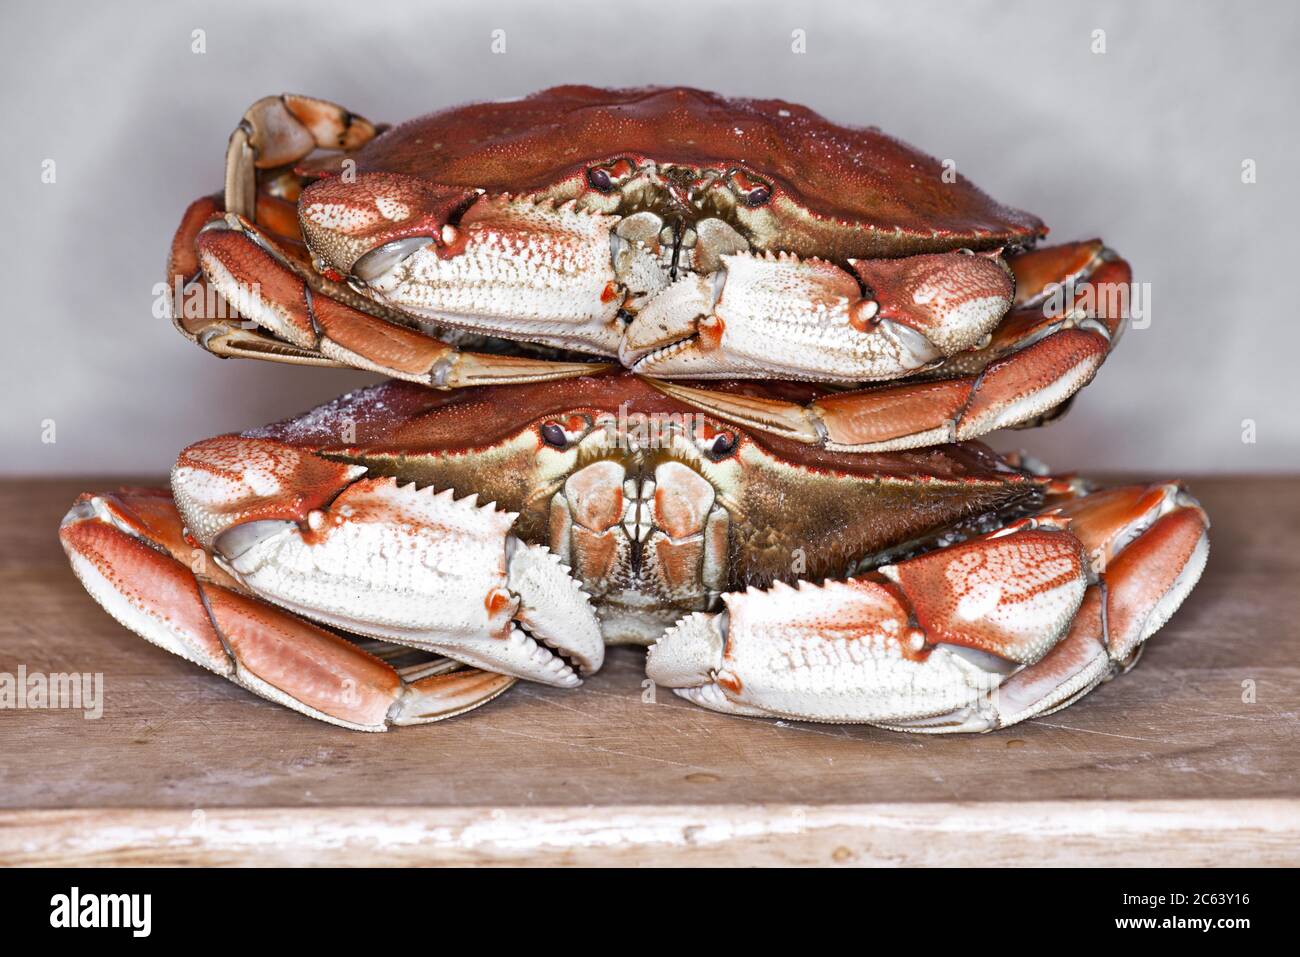 Deux crabes Dungeness cuits sur une planche à découper Banque D'Images